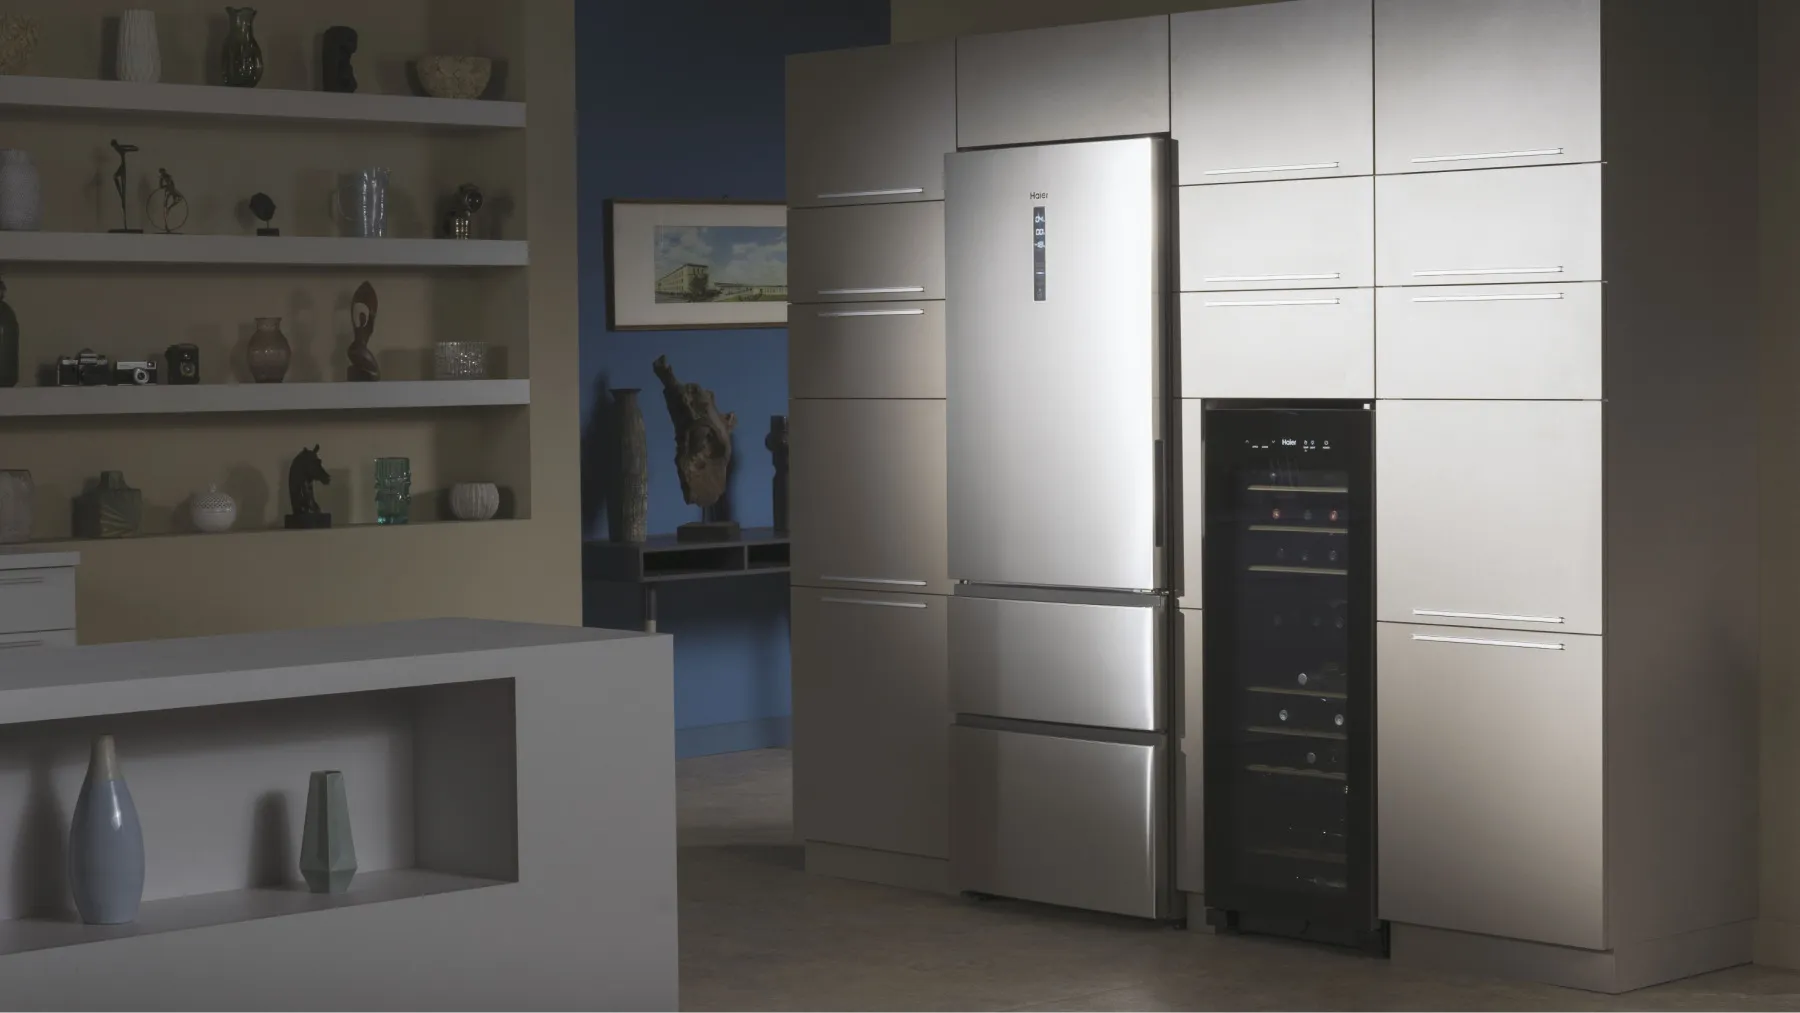 Таким холодильником можна керувати дистанційно